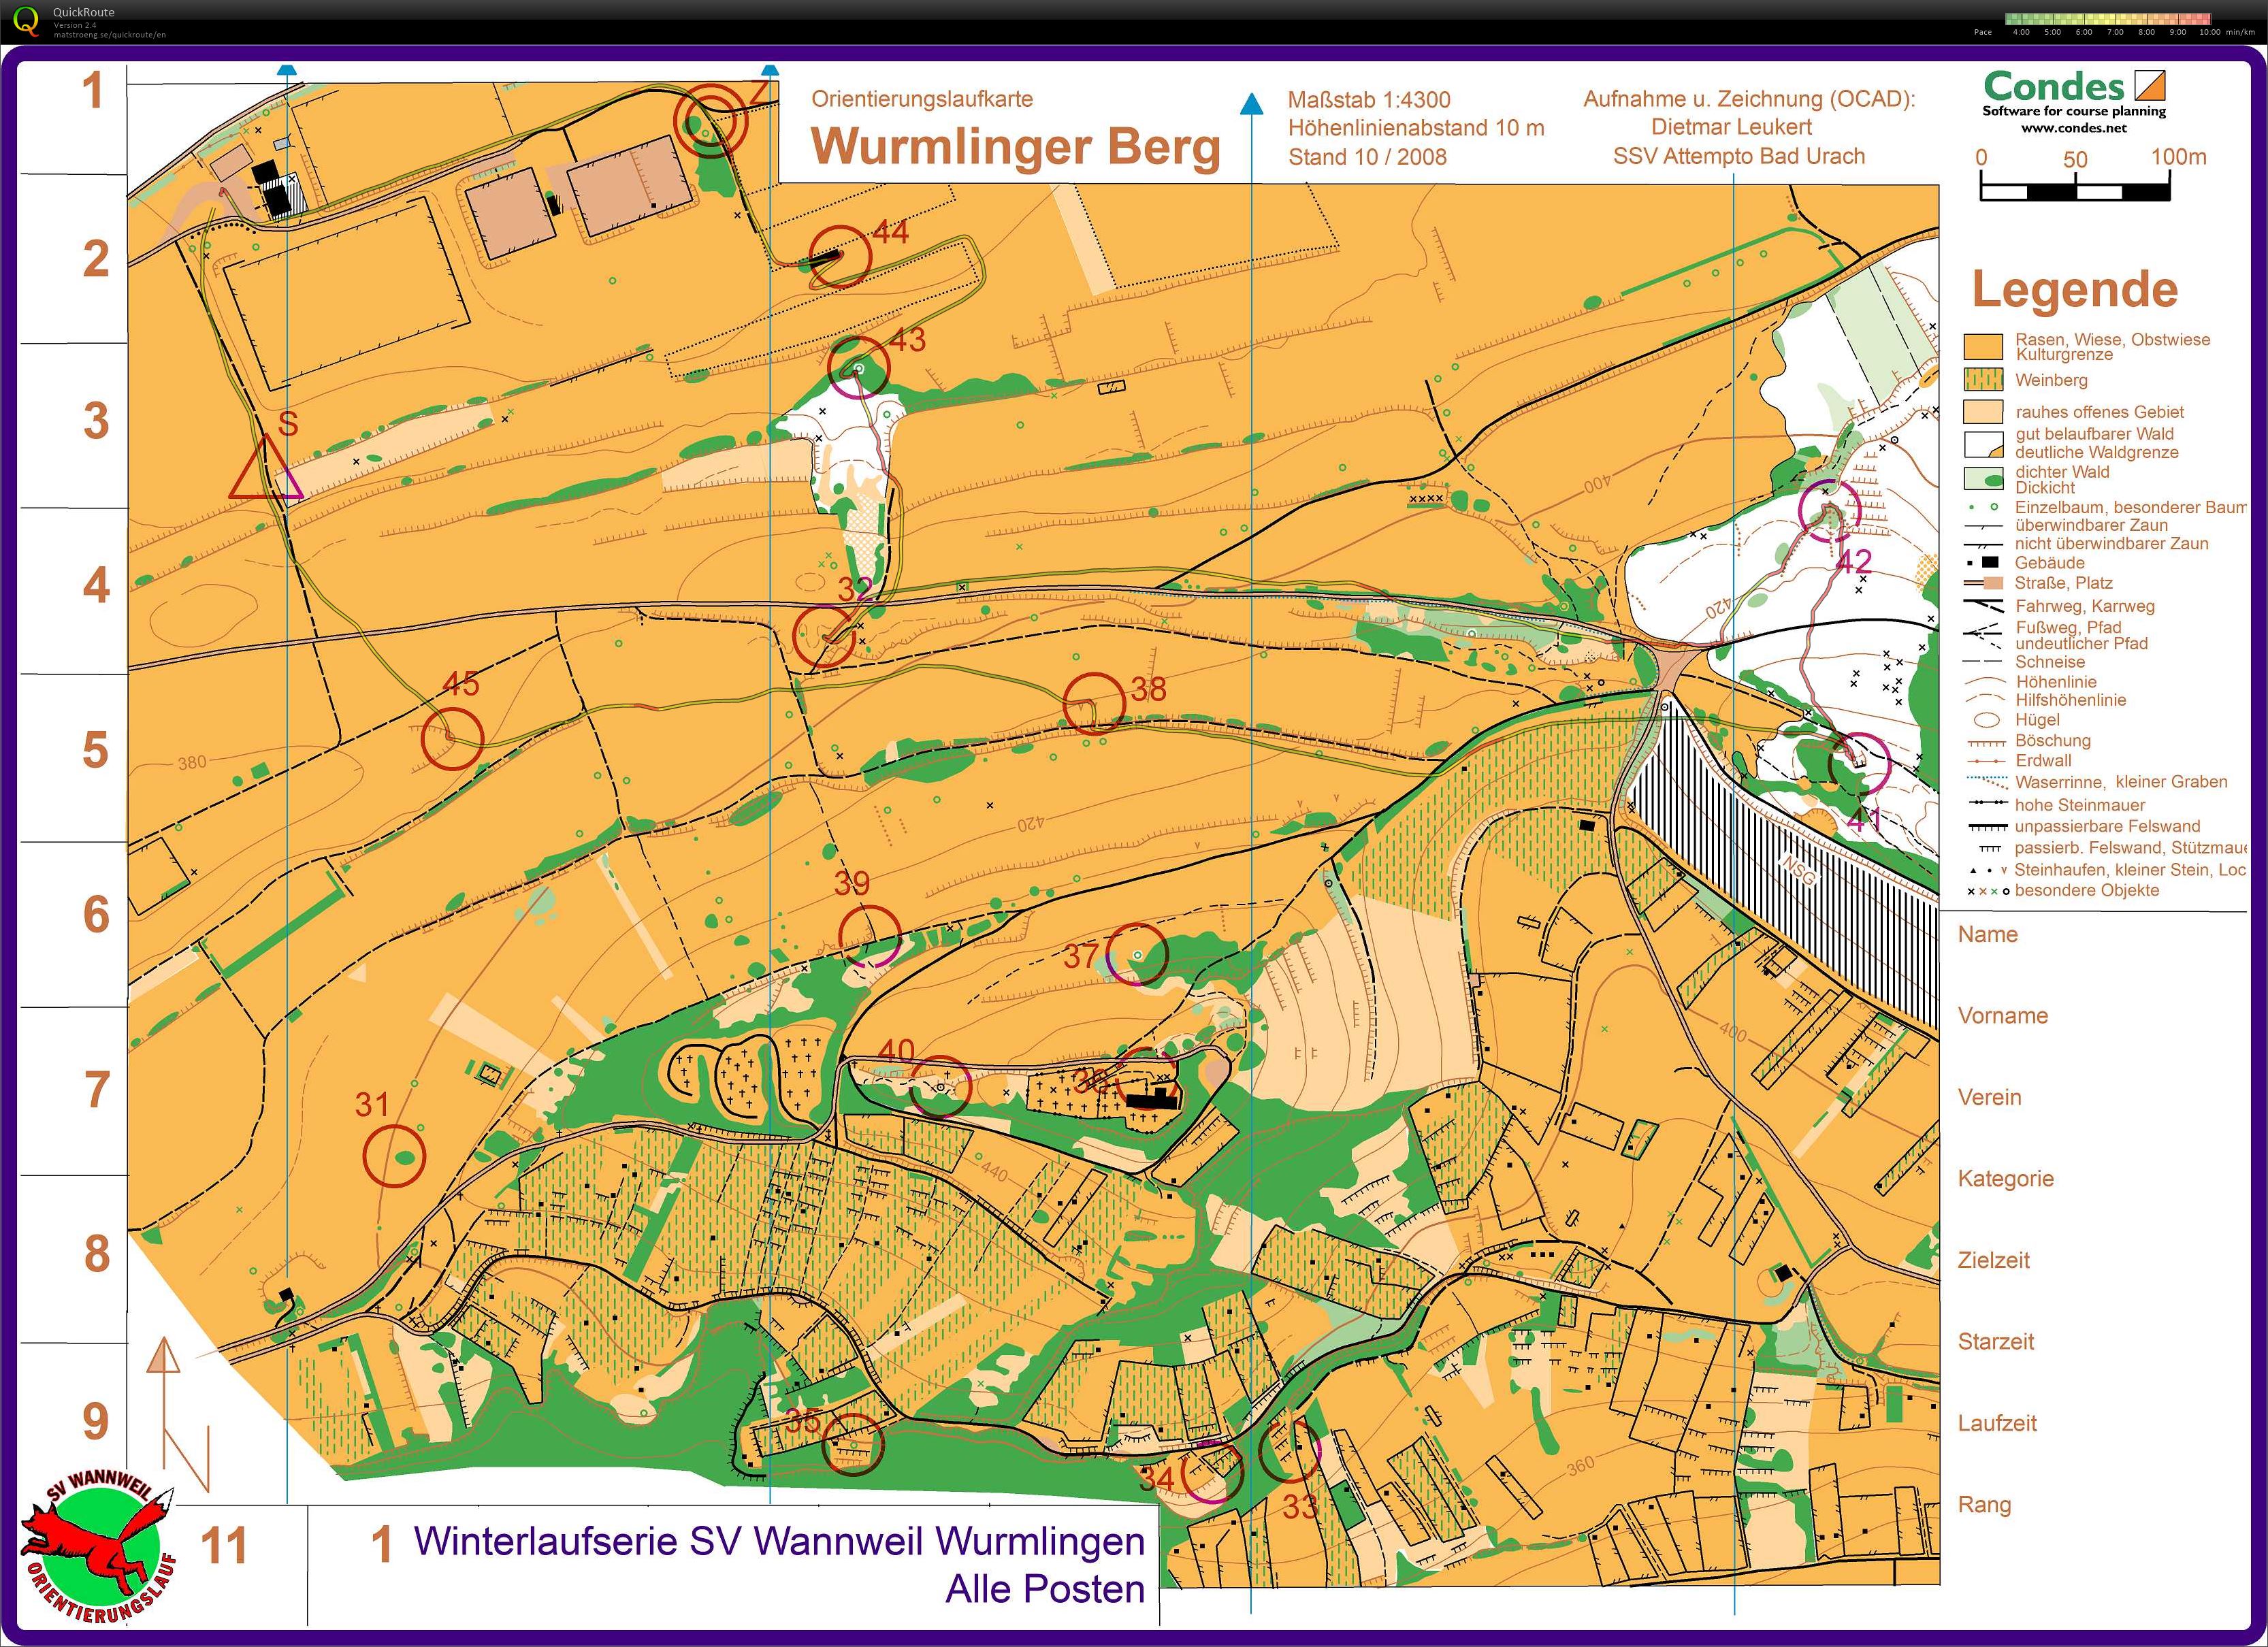 Wurmlingen Training set controls (21-01-2018)